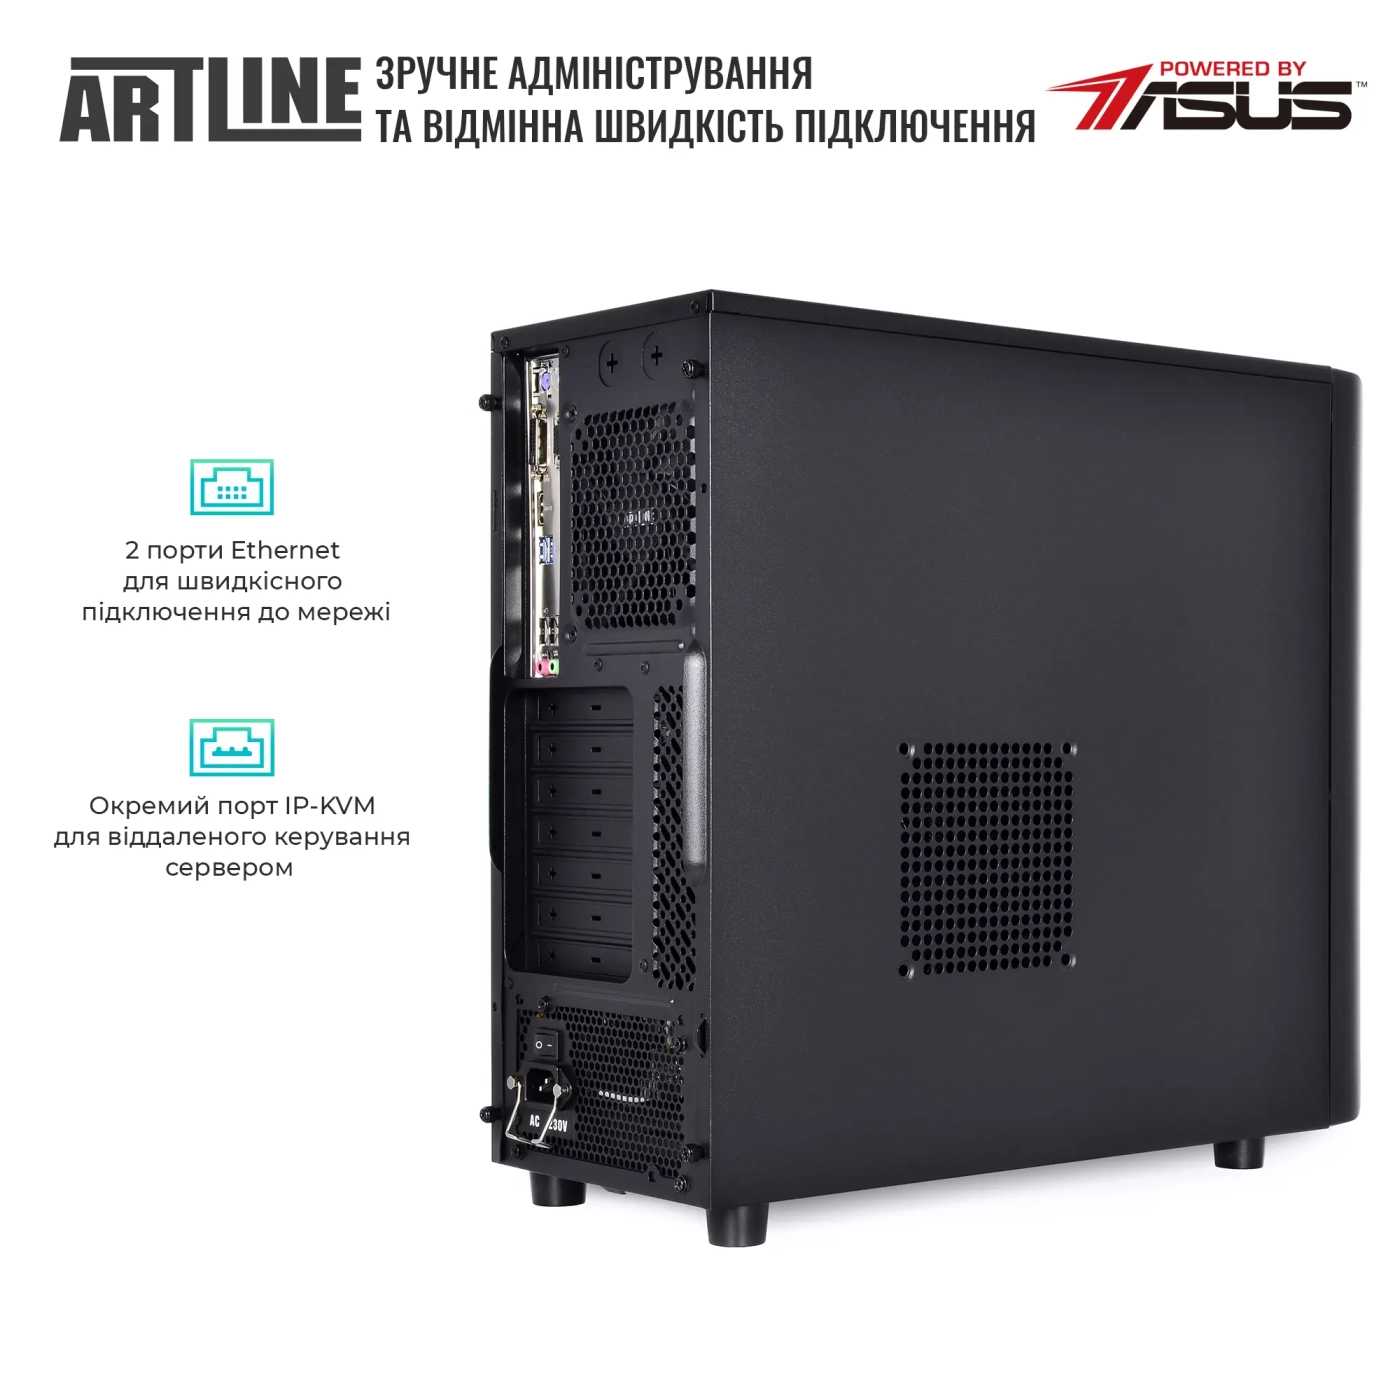 Купить Сервер ARTLINE Business T35v16 - фото 5